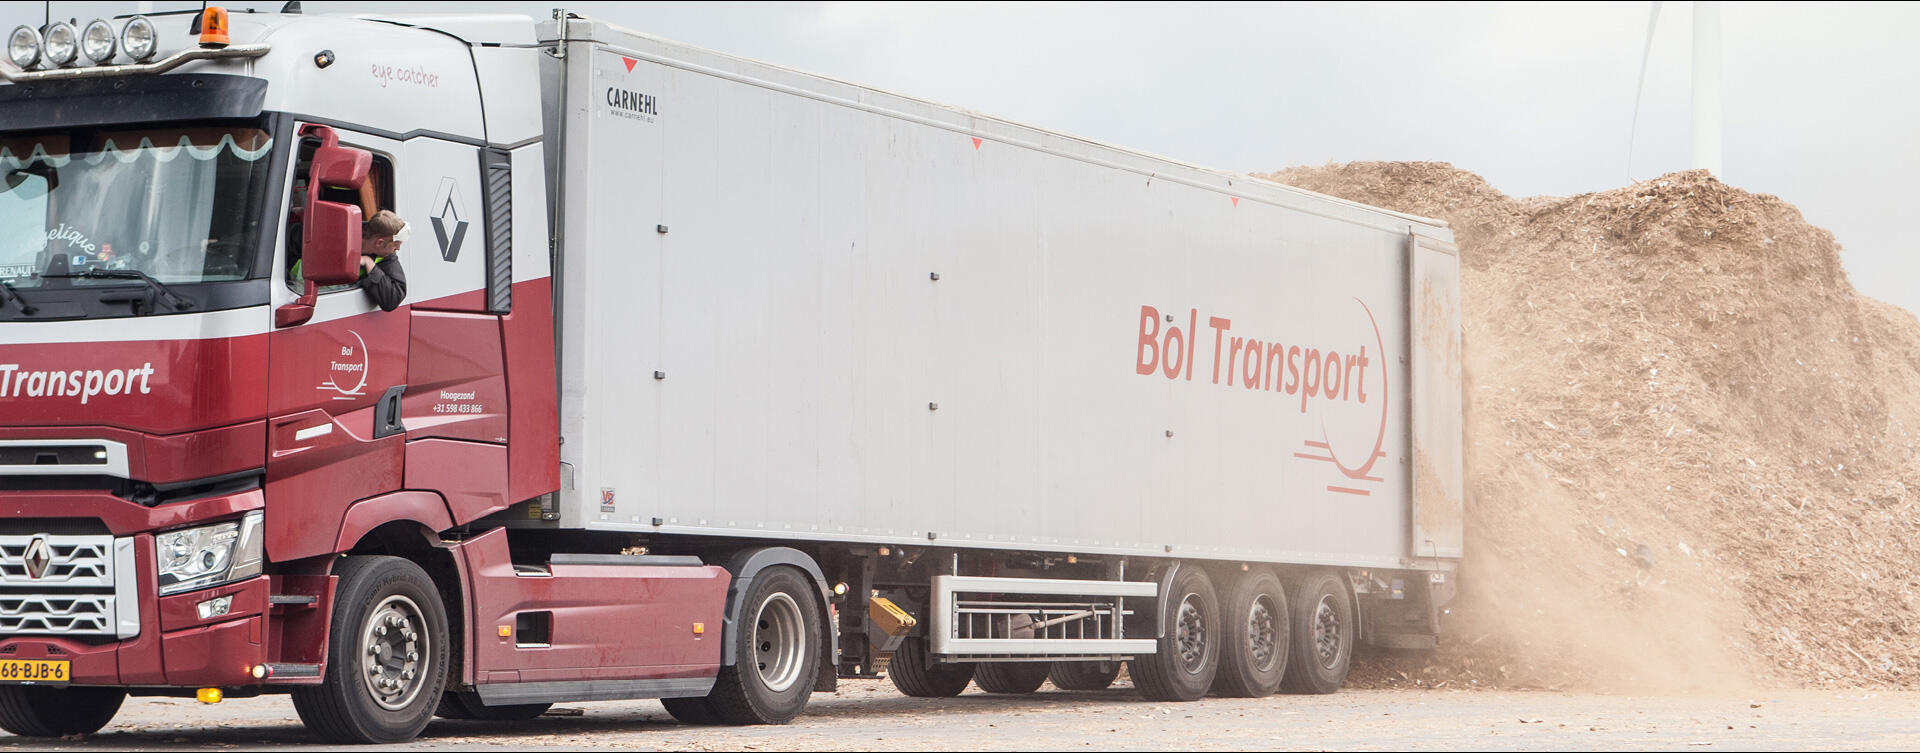 Bol Transport breidt uit met Renault Trucks T High met Carnehl Cargo Floor trailer